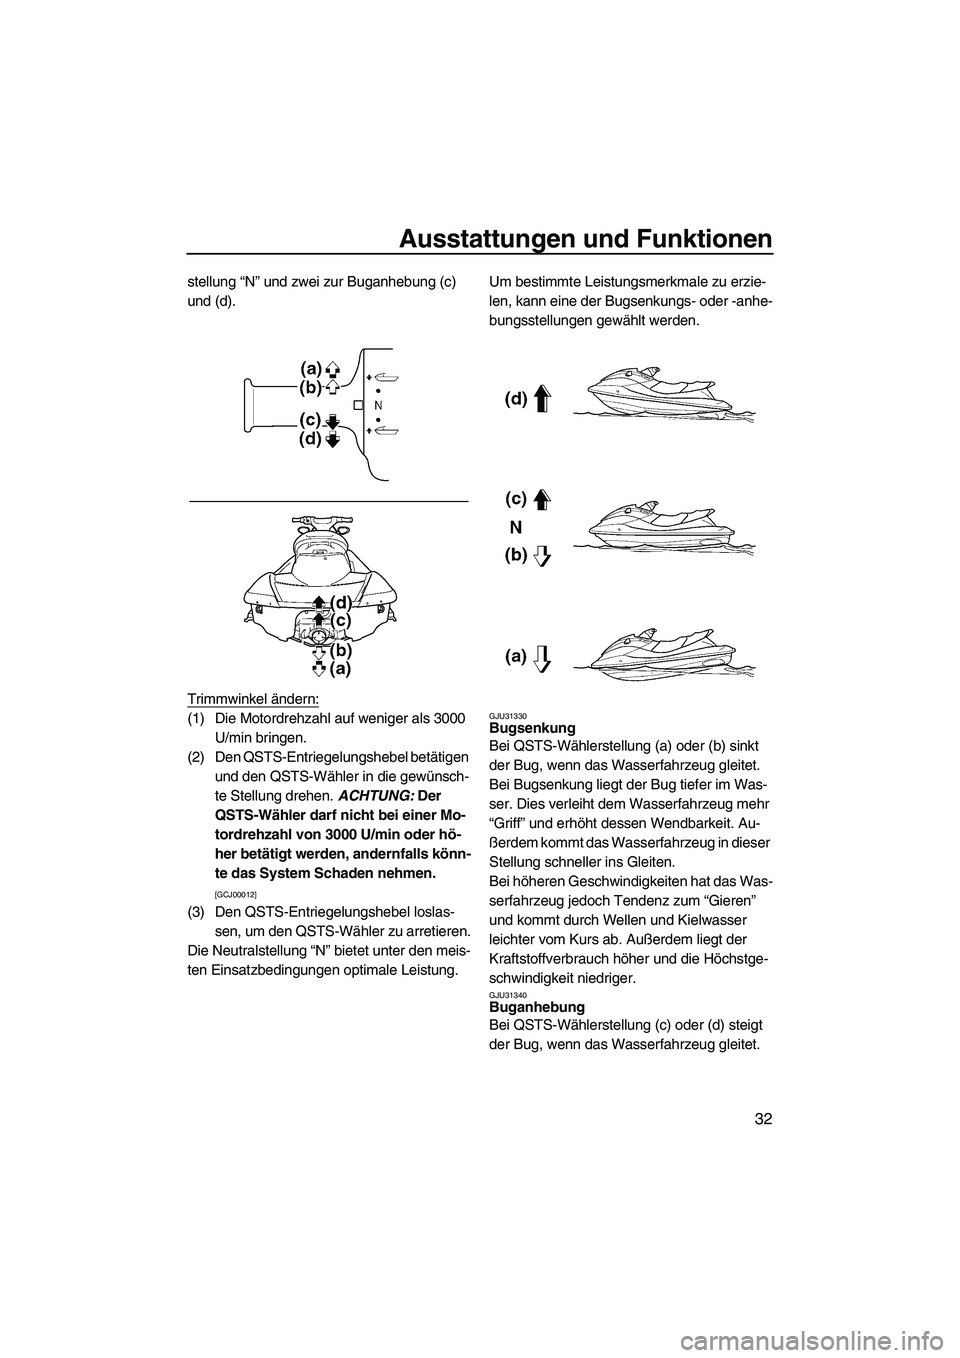 YAMAHA SVHO 2009  Betriebsanleitungen (in German) Ausstattungen und Funktionen
32
stellung “N” und zwei zur Buganhebung (c) 
und (d).
Trimmwinkel ändern:
(1) Die Motordrehzahl auf weniger als 3000 
U/min bringen.
(2) Den QSTS-Entriegelungshebel 